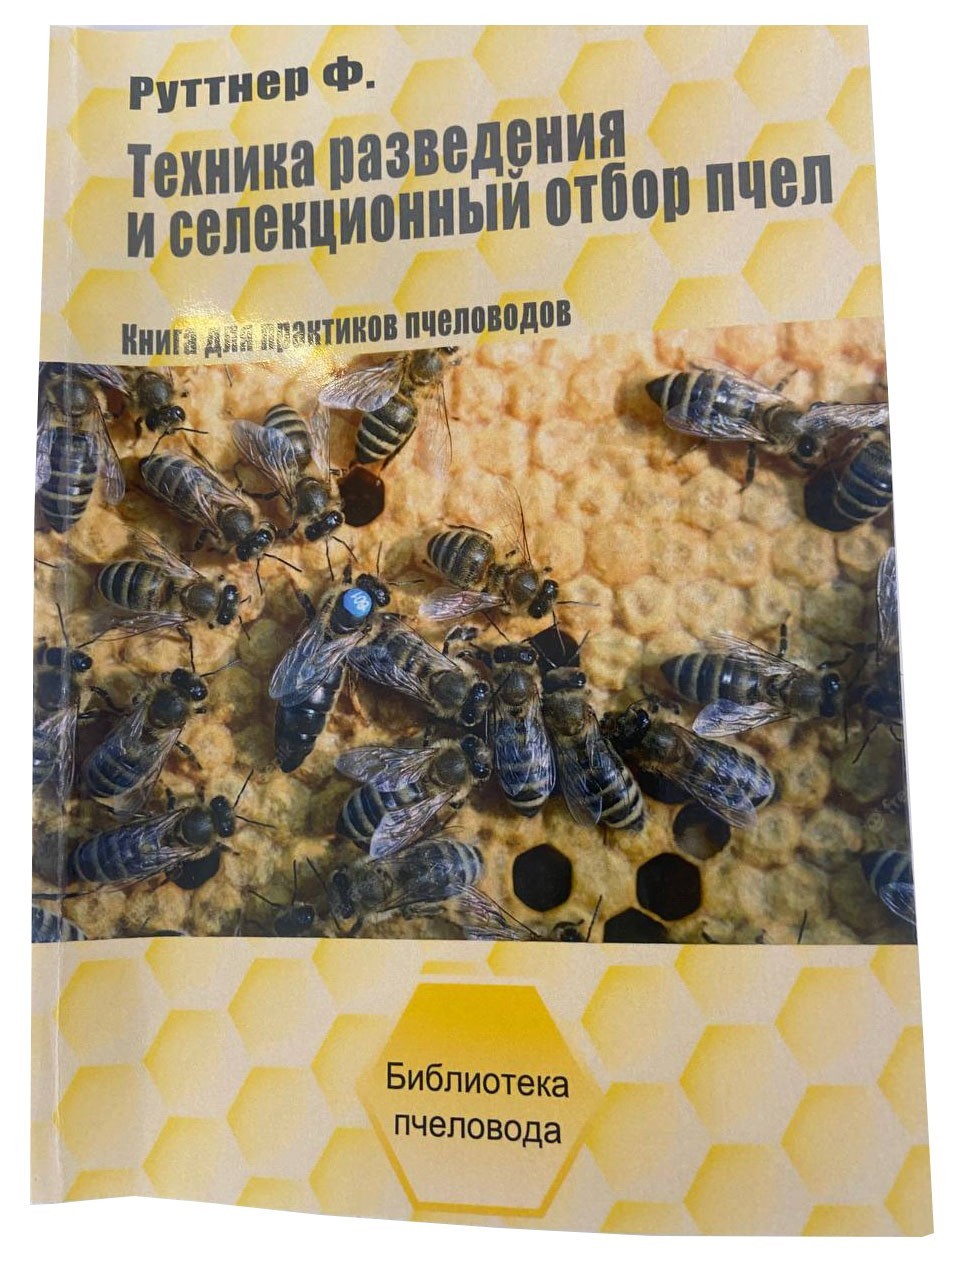 Магазин пчеловодства Uley: купить товары для пасеки в Украине